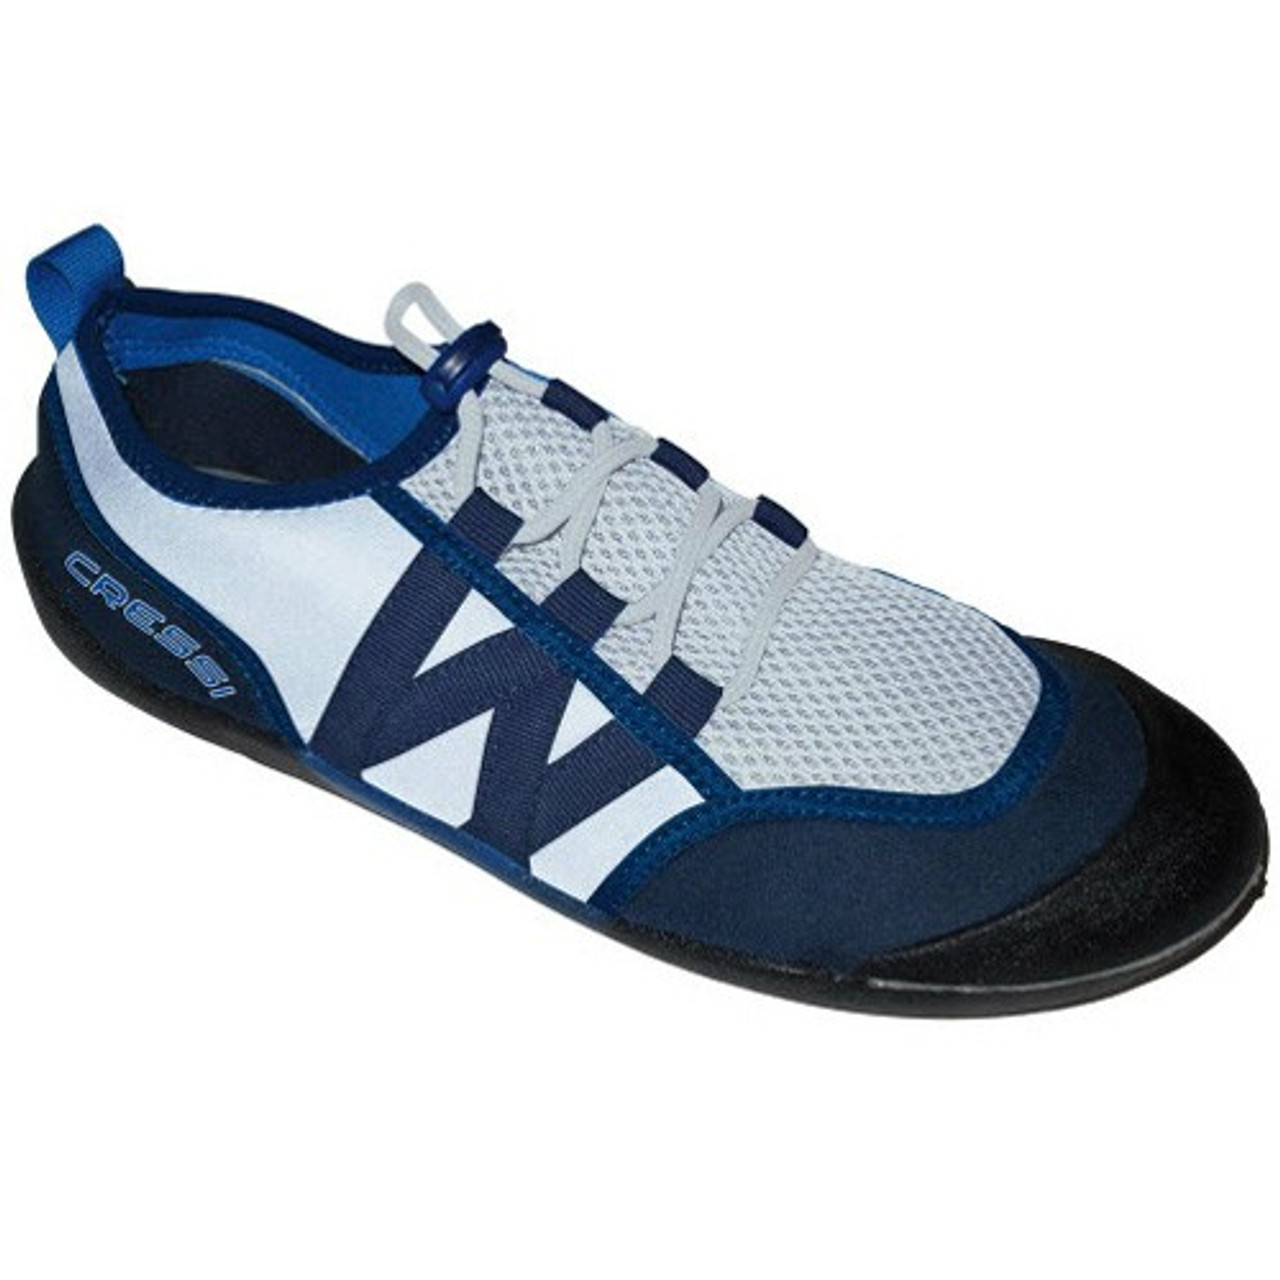 Cressi Elba Blue Aqua Shoes | Aquashoes 